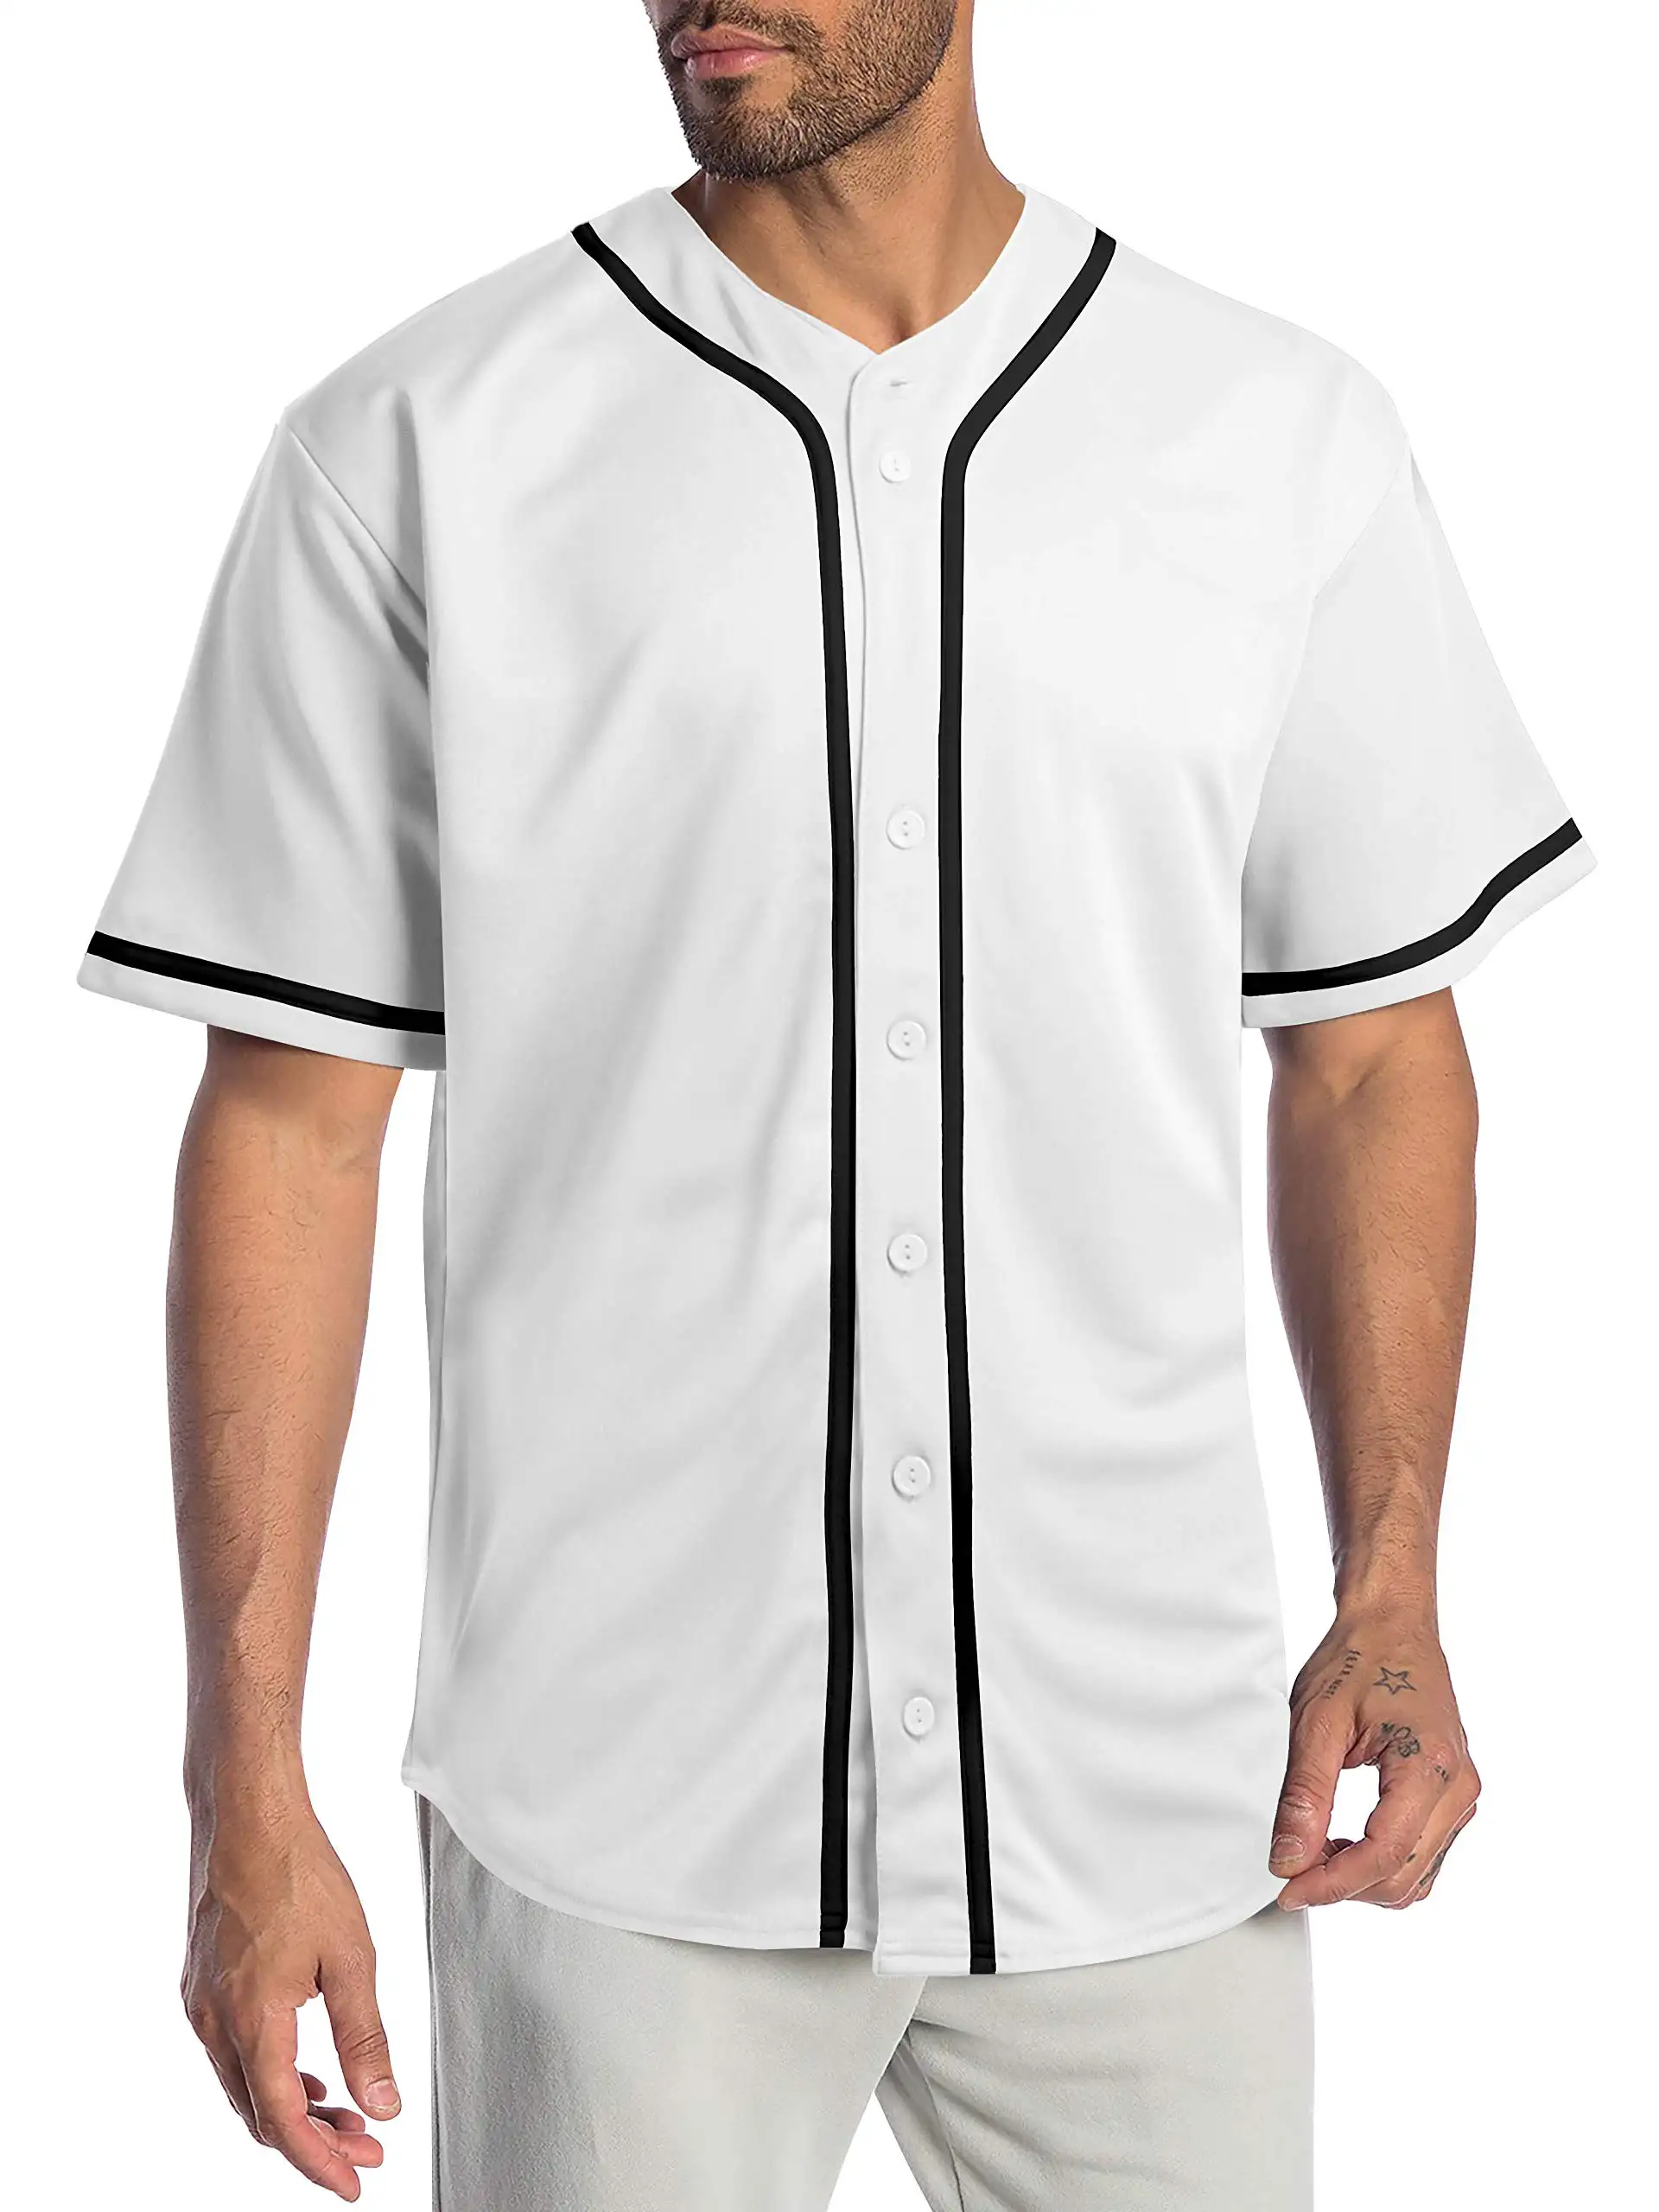 Özel yüceltilmiş takım adı Logo numarası baskı spor beyzbol üniforma ceketler kadın erkek beyzbol formaları giymek